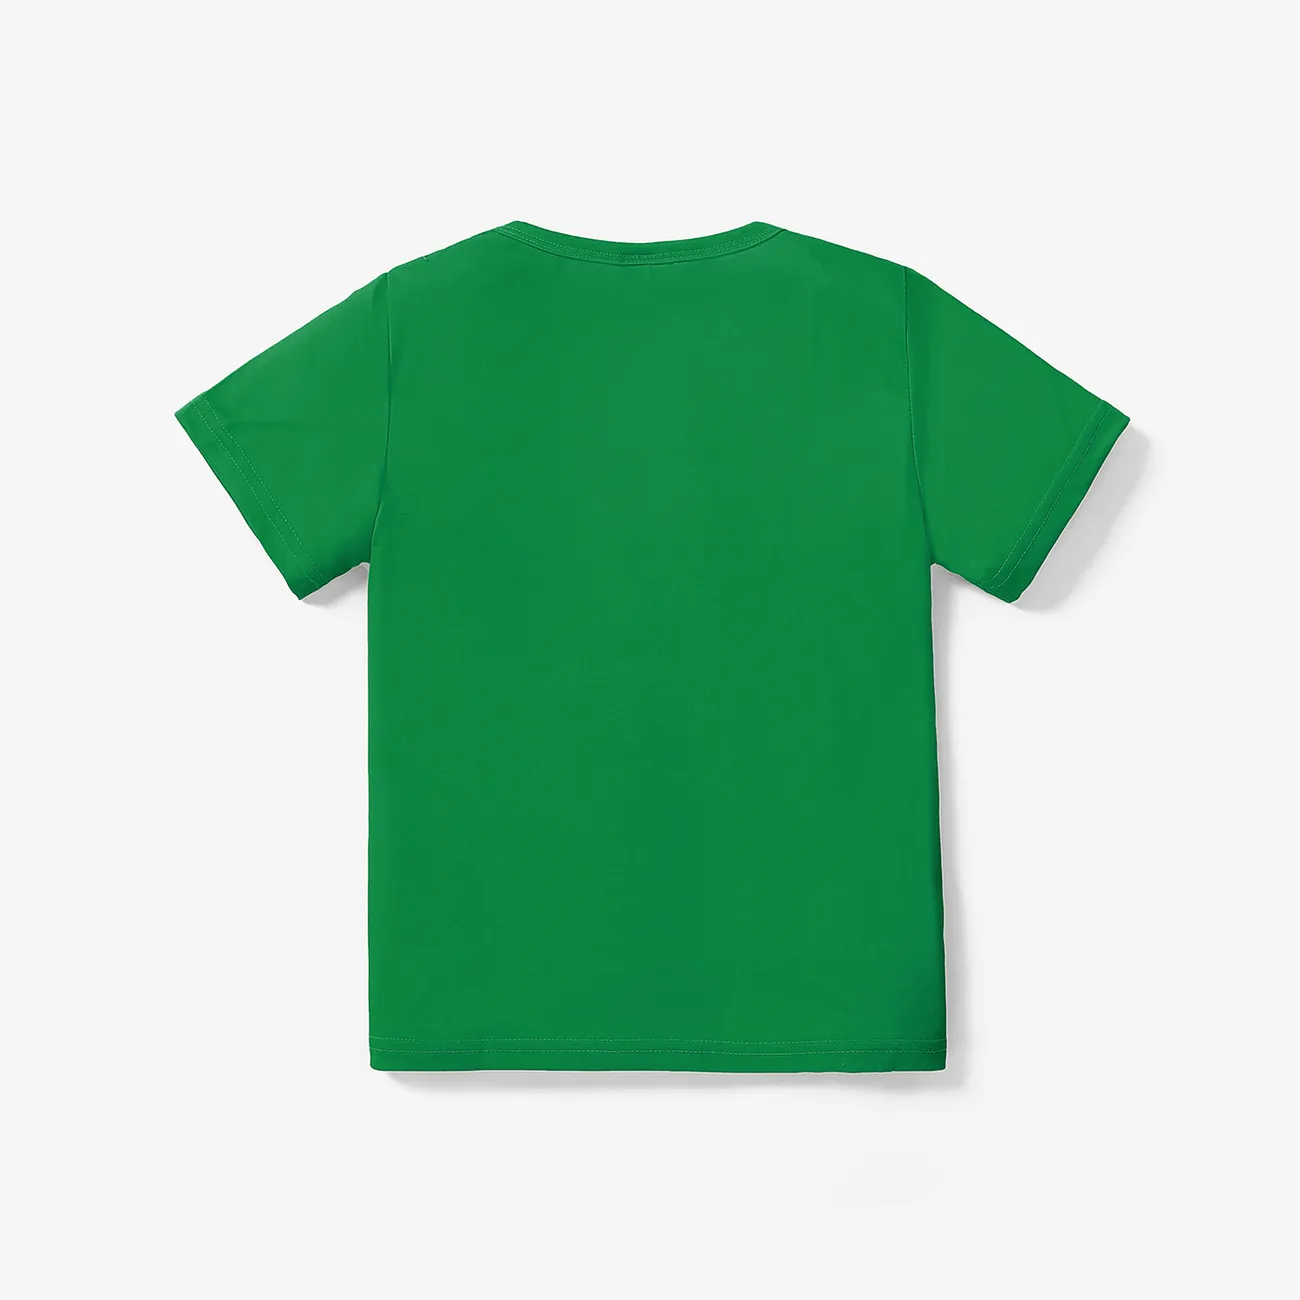 Kinder Unisex Gesichtsausdrücke Kurzärmelig T-Shirts grün big image 1